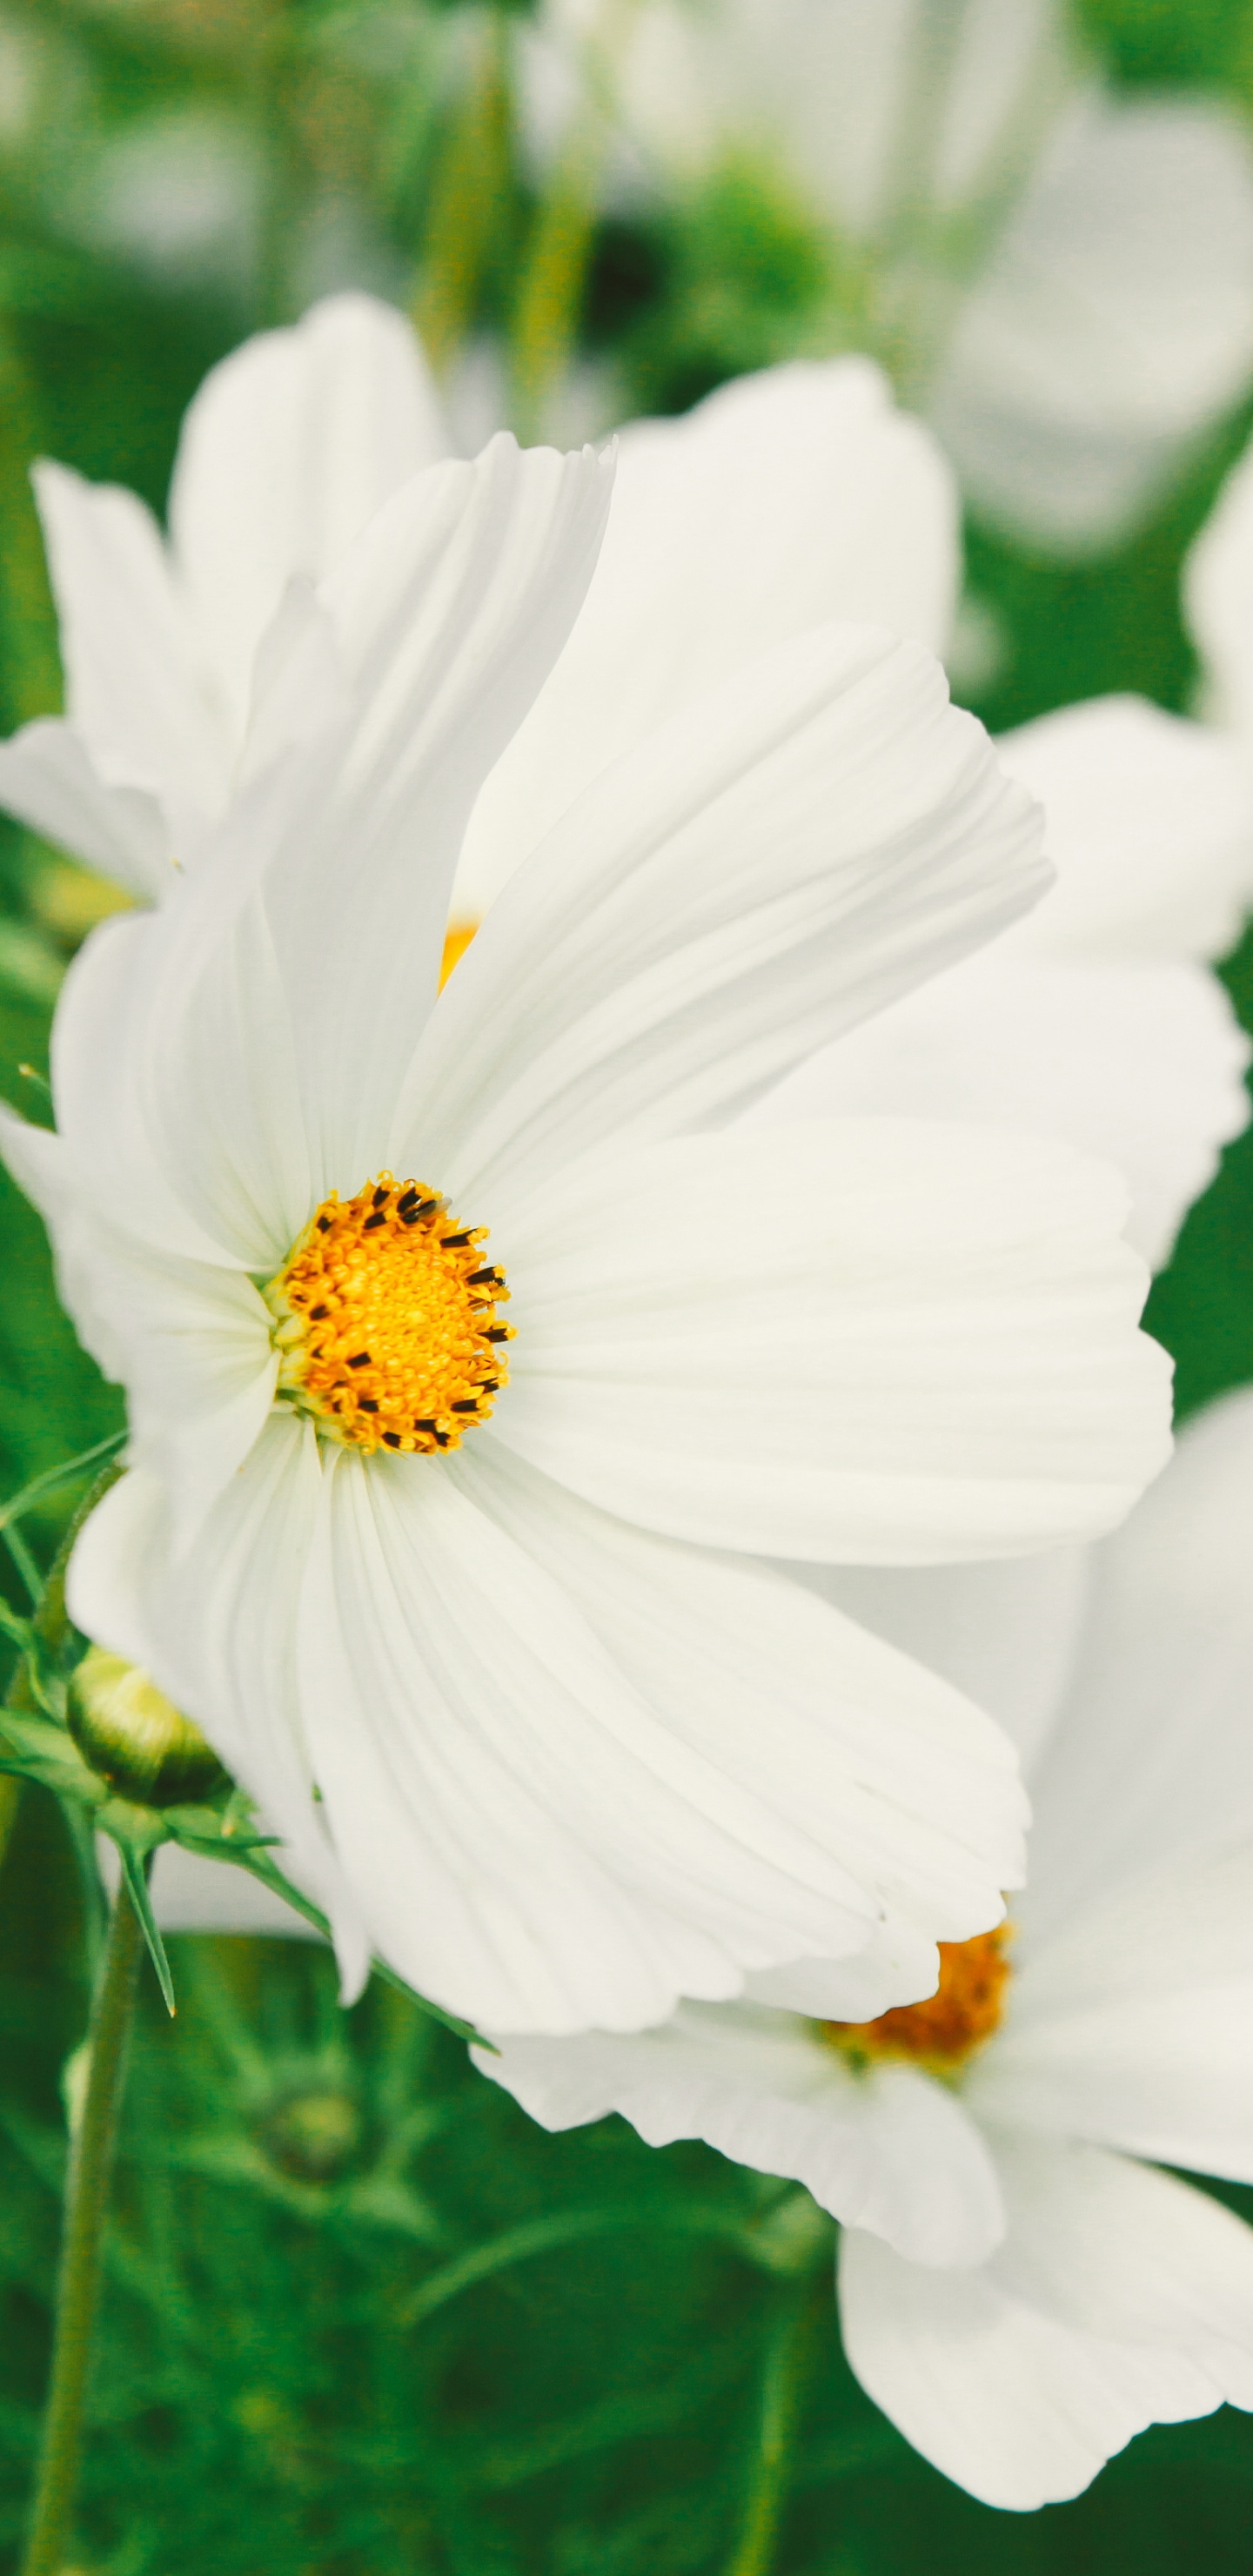 Flores Blancas en Lente de Cambio de Inclinación. Wallpaper in 1440x2960 Resolution